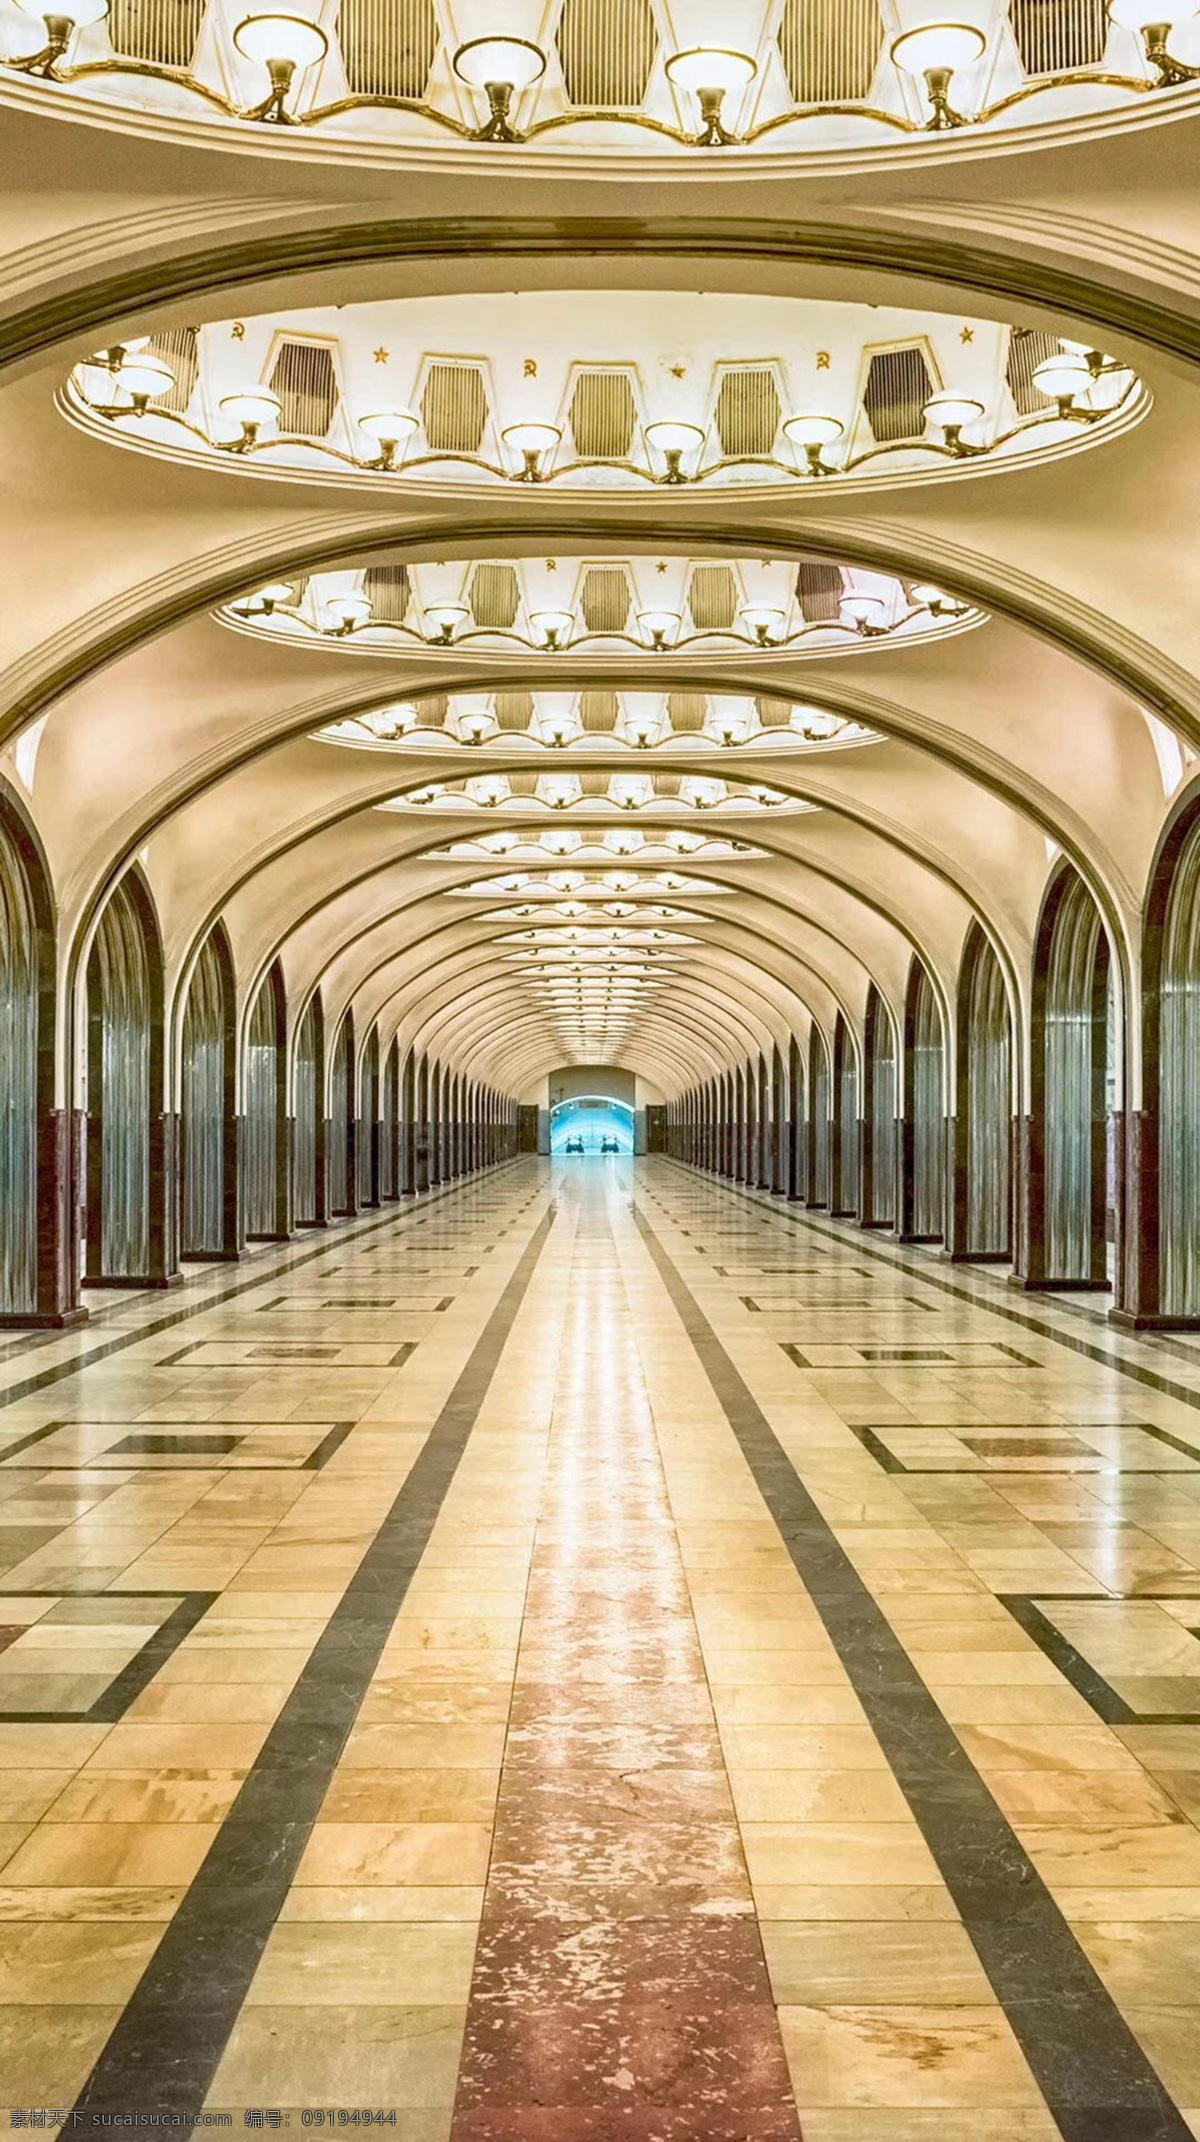 莫斯科地铁 莫斯科 地铁 苏联 俄罗斯 防空 核战 建筑 黄色建筑 高清图片集 旅游摄影 国外旅游